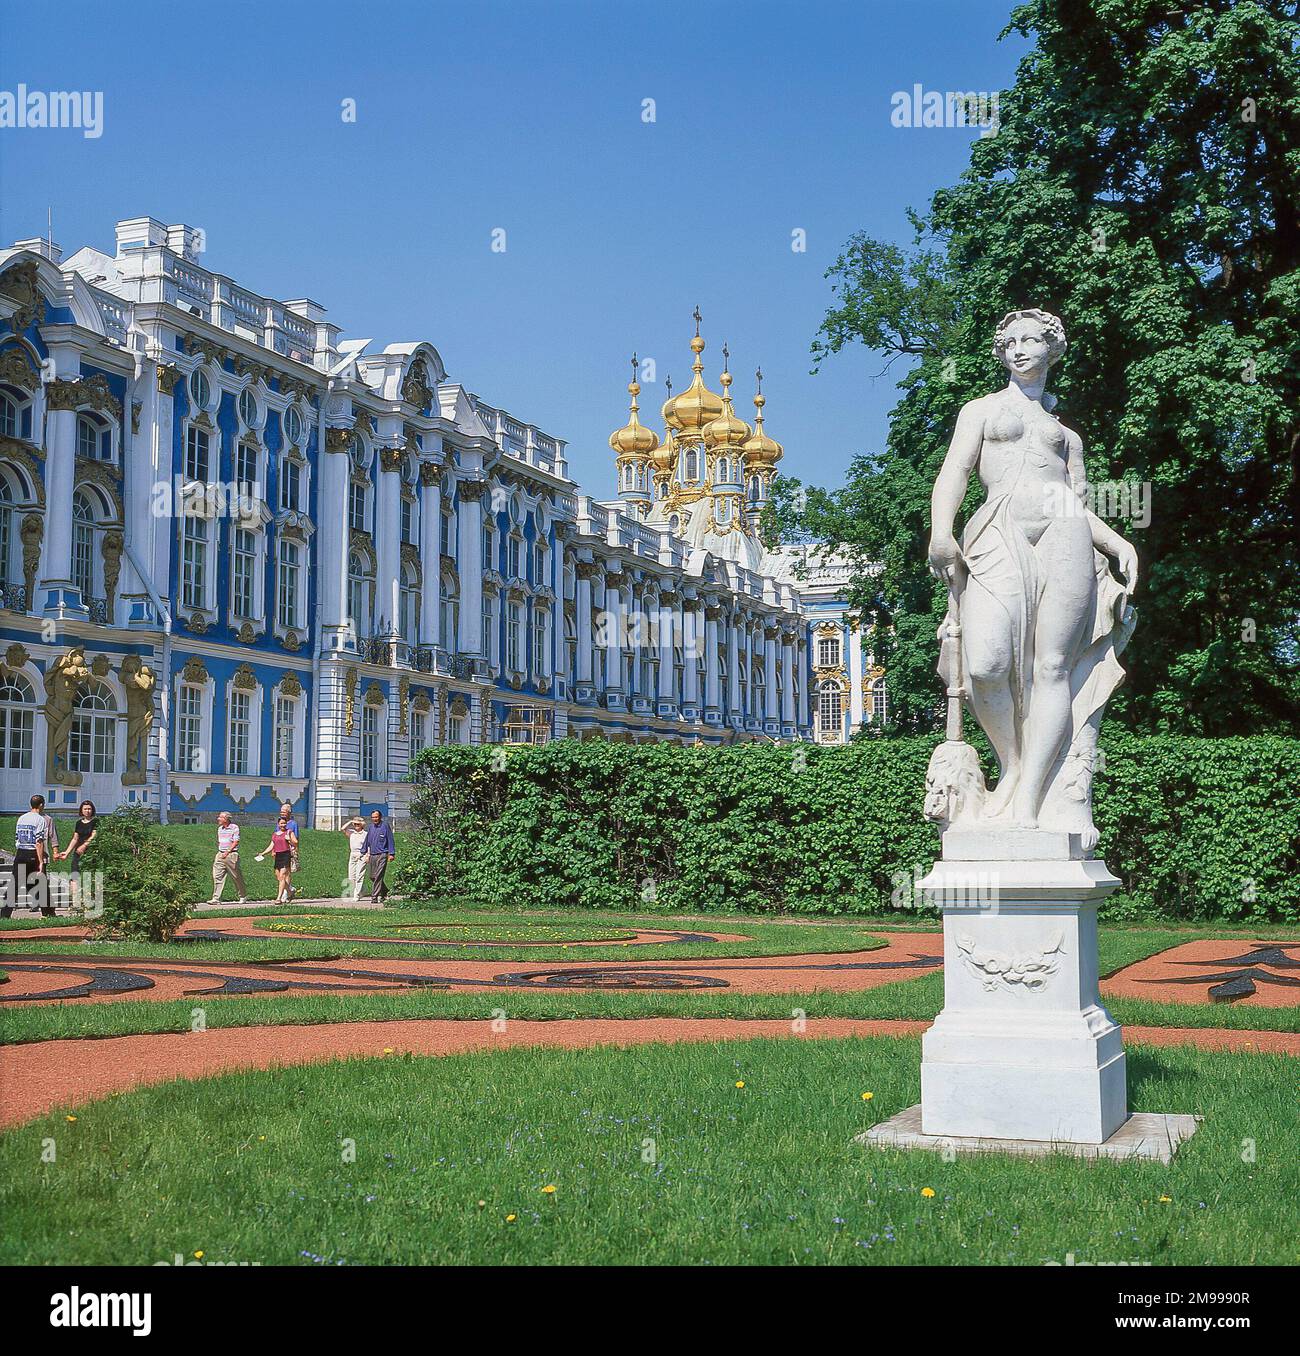 Blick auf den Palast und die Gärten, den Katharinenpalast, Puschkin, St. Petersburg, die nordwestliche Region, Russland Stockfoto